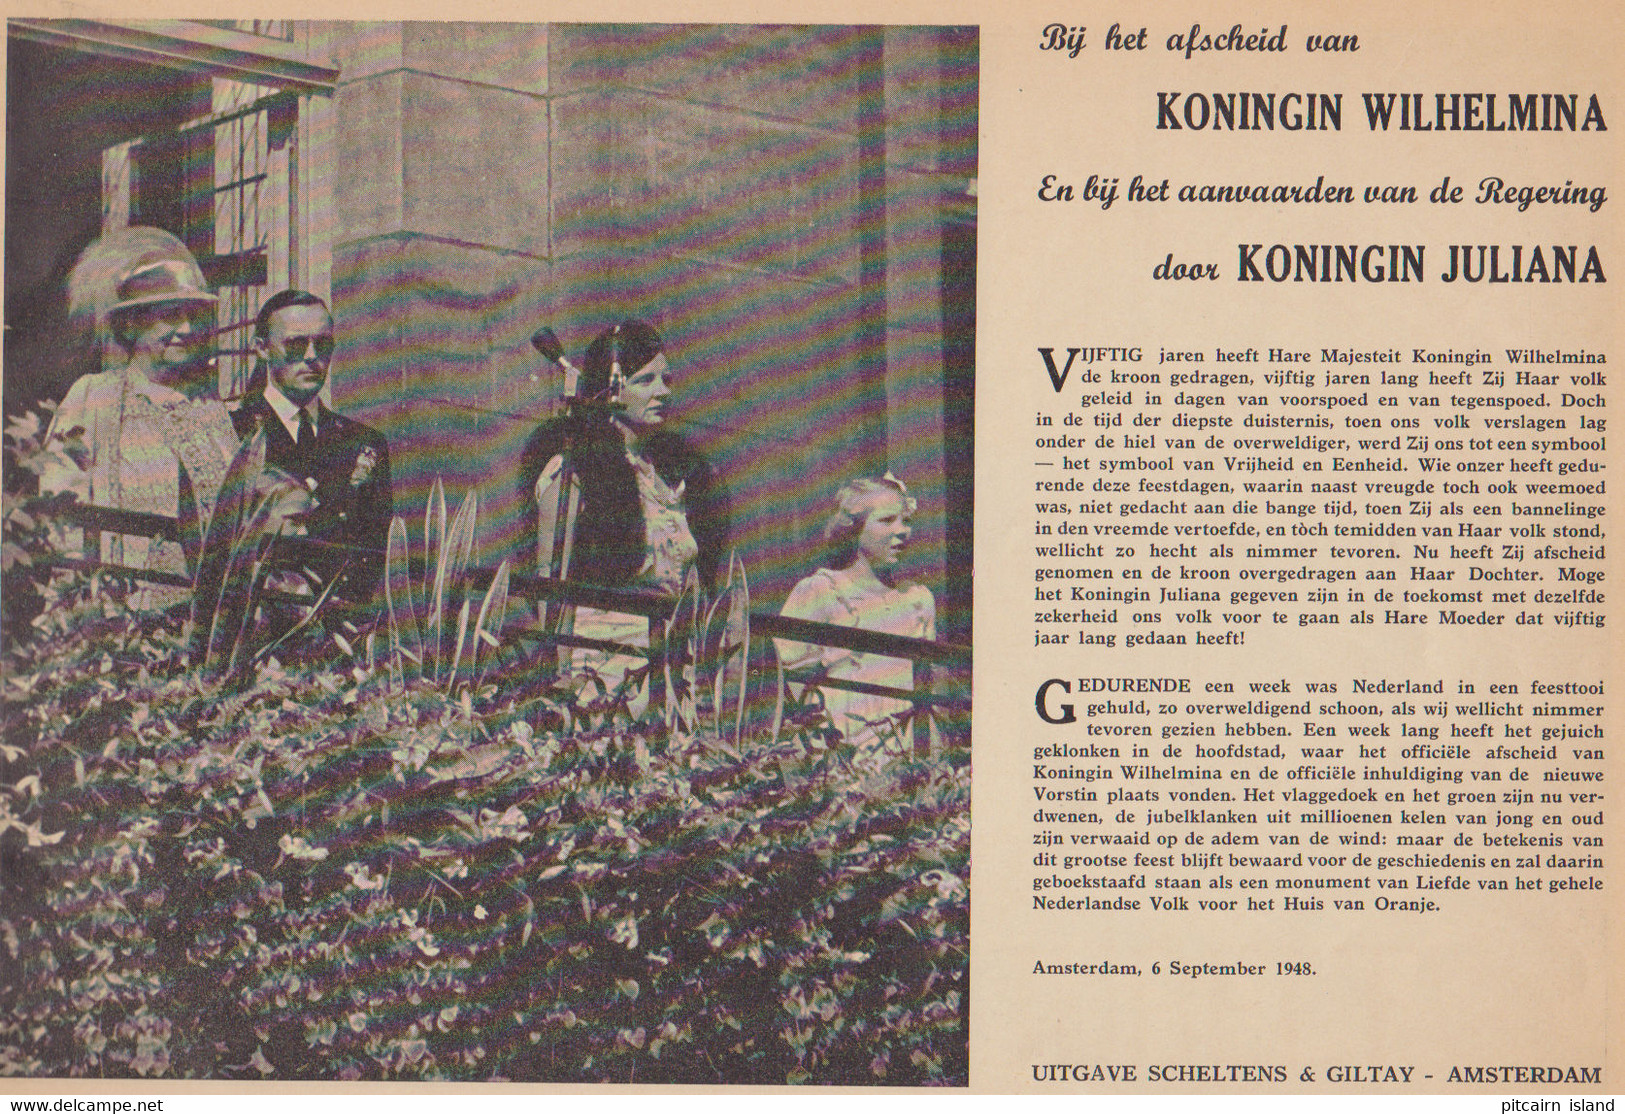 Nederland Jubelt Herdenkingsalbum Troonbestijging 1948 - Anciens